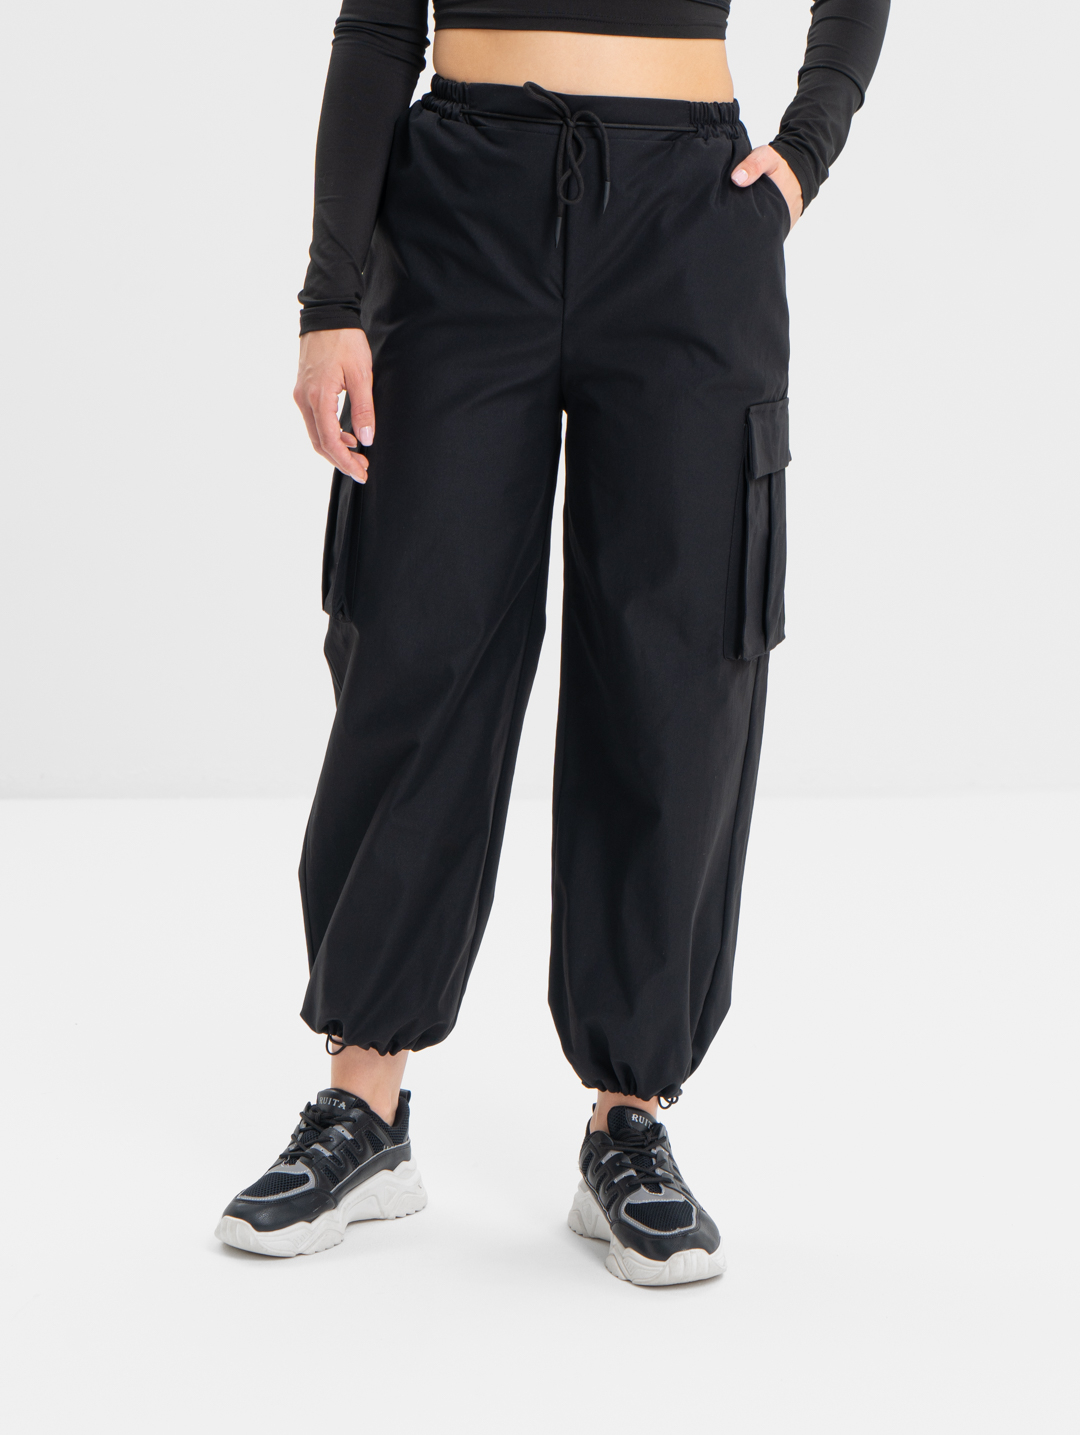 Женские брюки карго джогеры, летние трубы широкие, с накладными карманамикупить по цене 1054 ₽ в интернет-магазине KazanExpress